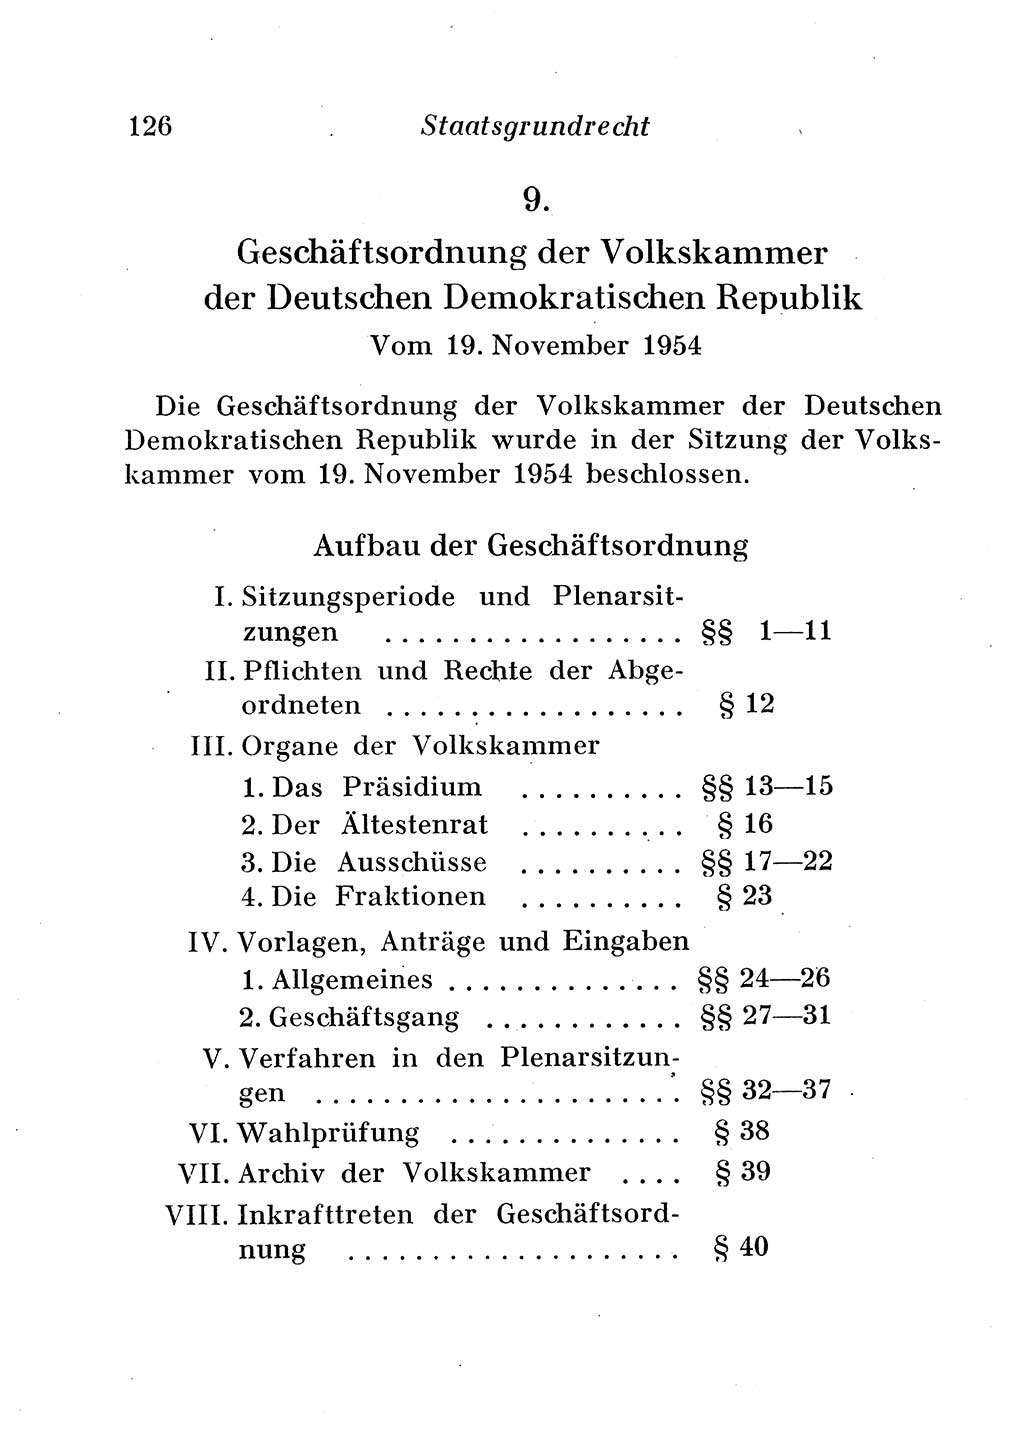 Staats- und verwaltungsrechtliche Gesetze der Deutschen Demokratischen Republik (DDR) 1958, Seite 126 (StVerwR Ges. DDR 1958, S. 126)